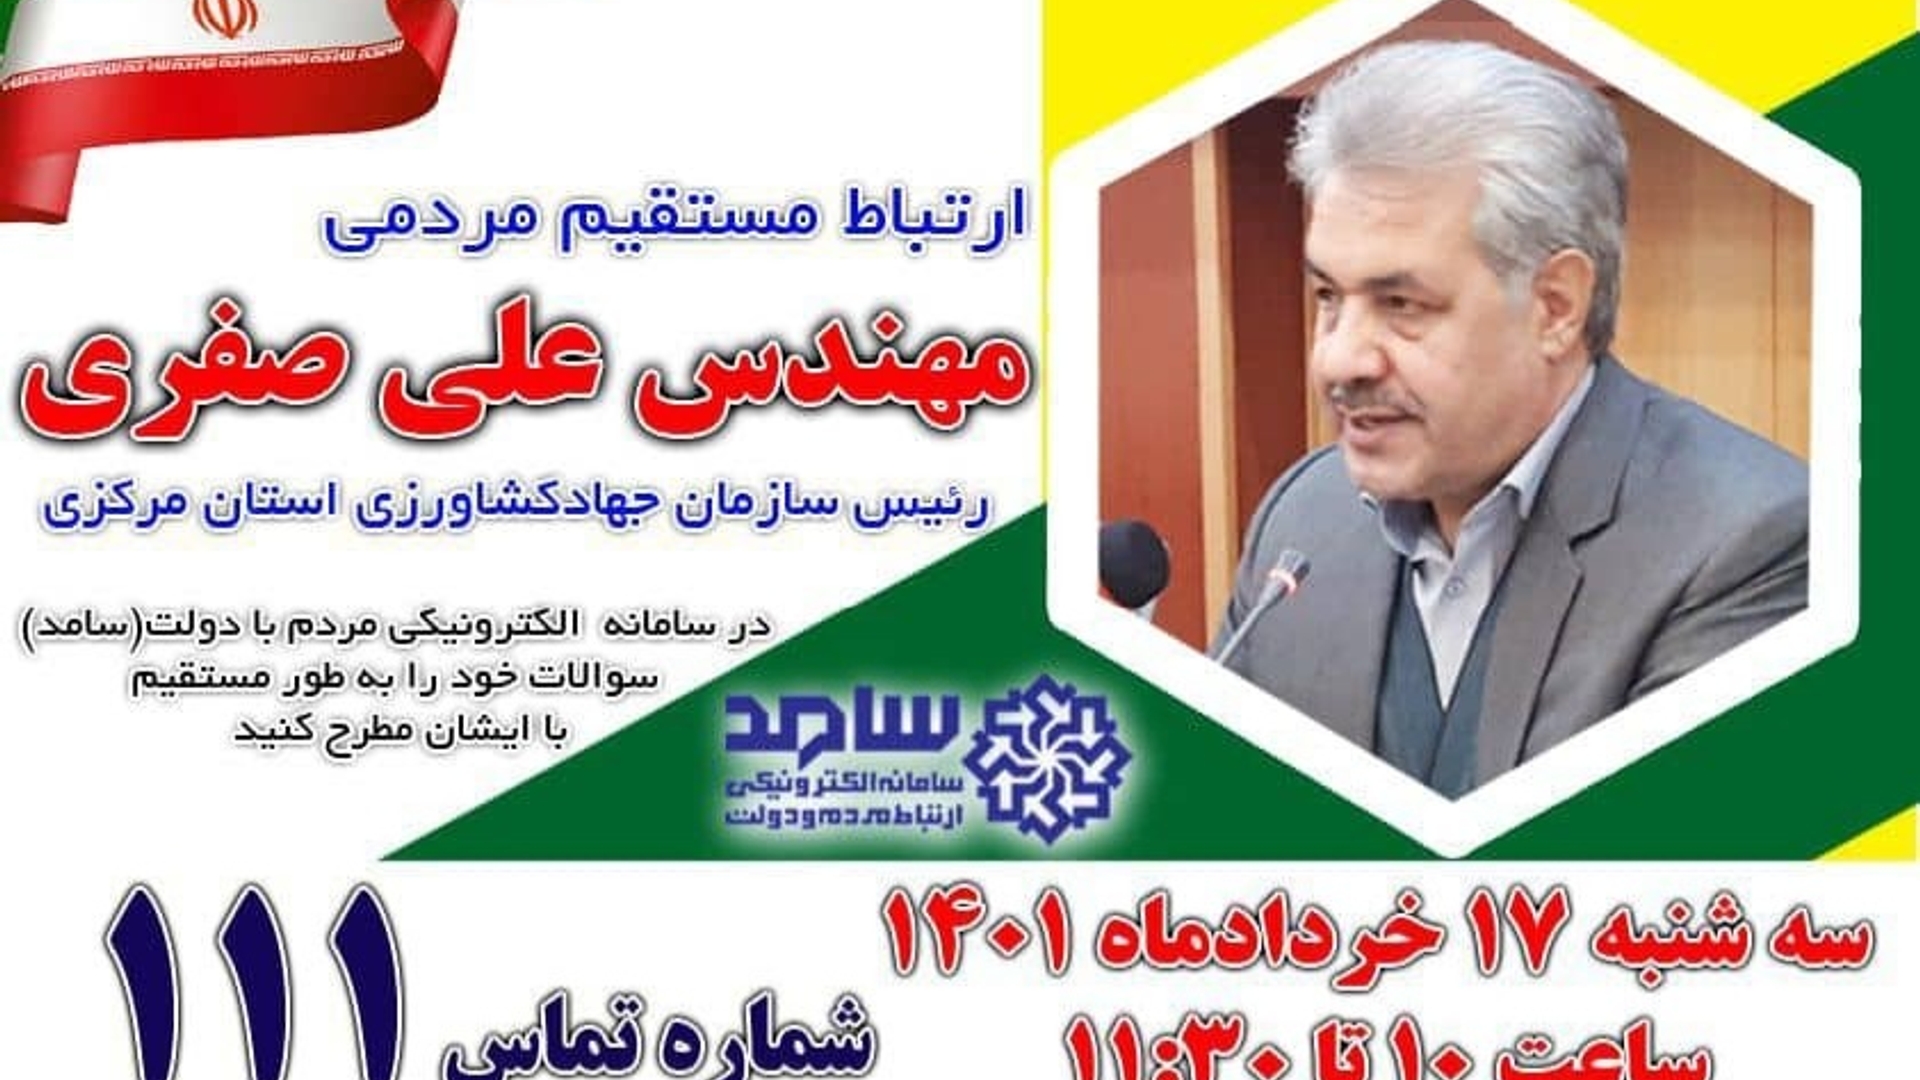 ارتباط مستقیم مردمی  صفری  رئیس سازمان جهاد کشاورزی استان مرکزی در برنامه سامد با شماره تماس 111